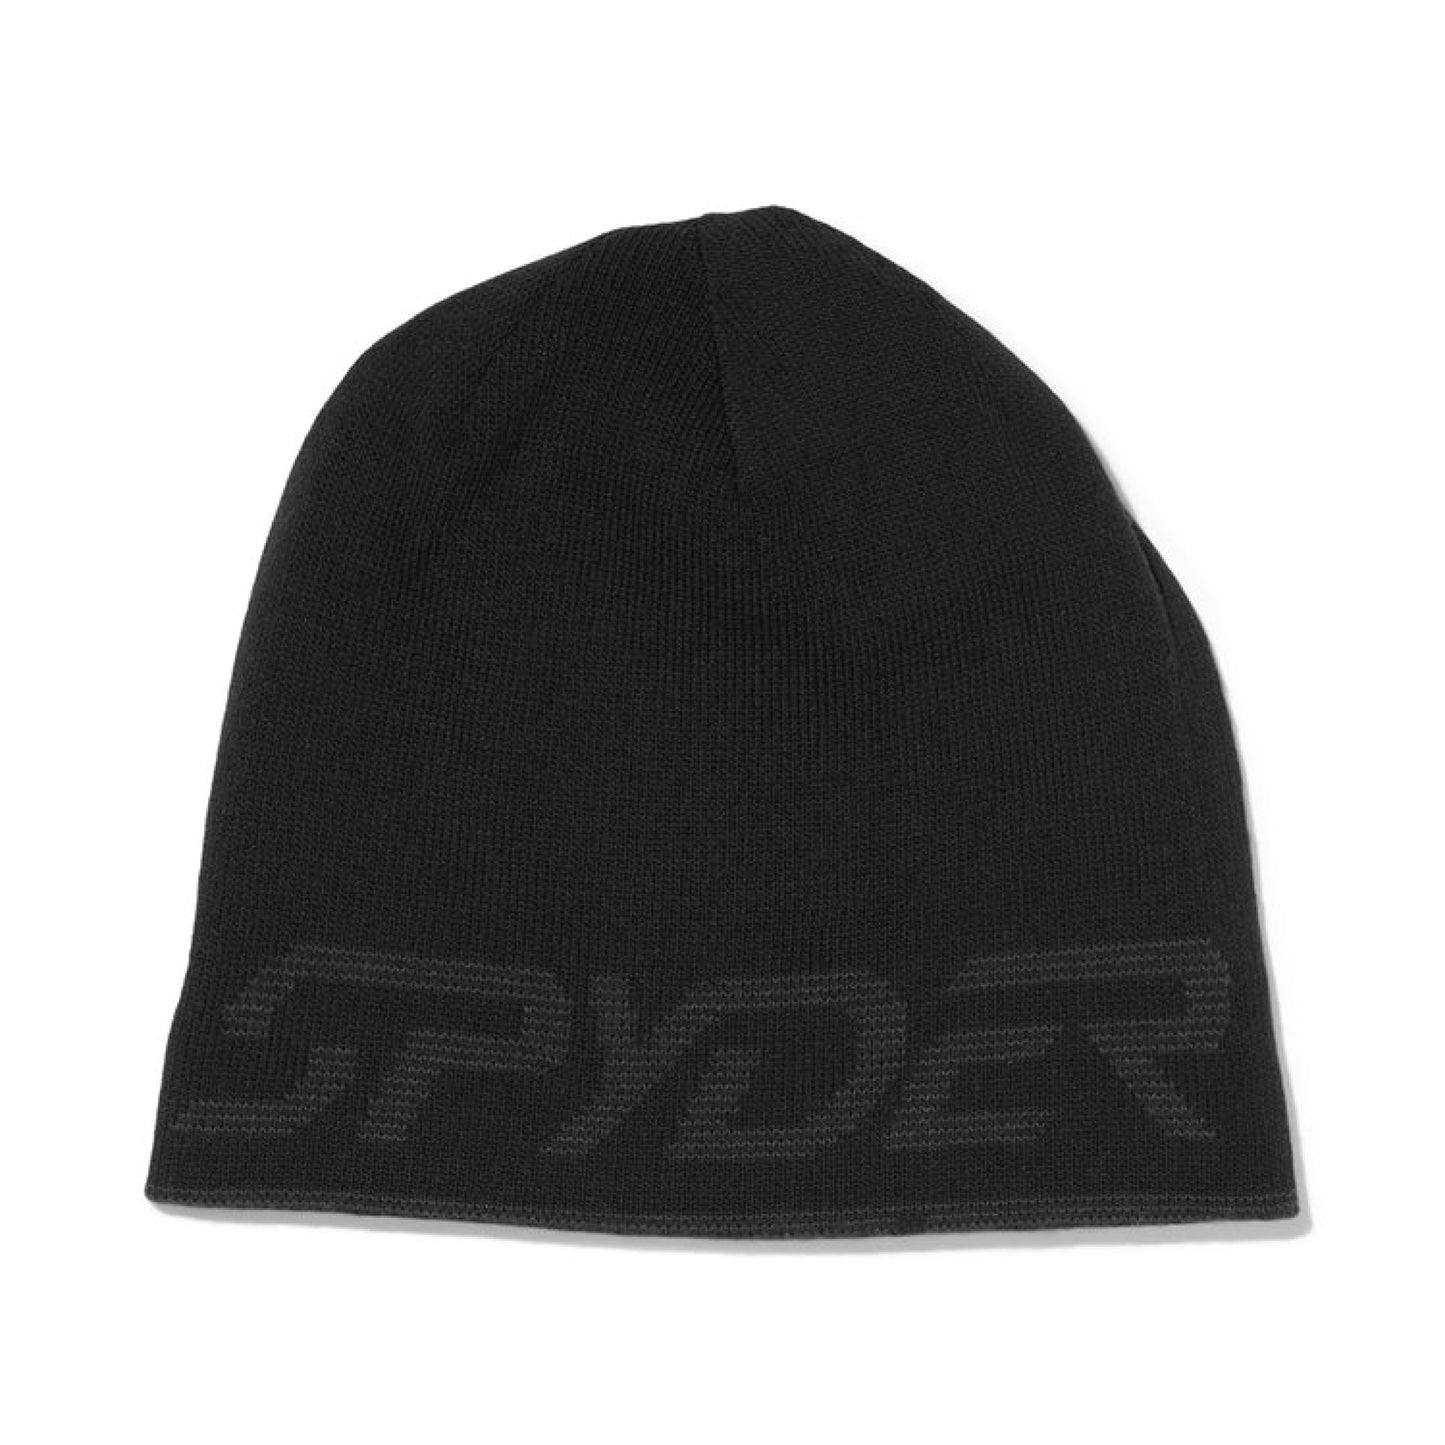 Spyder Innsbruck Reversible Hat Black